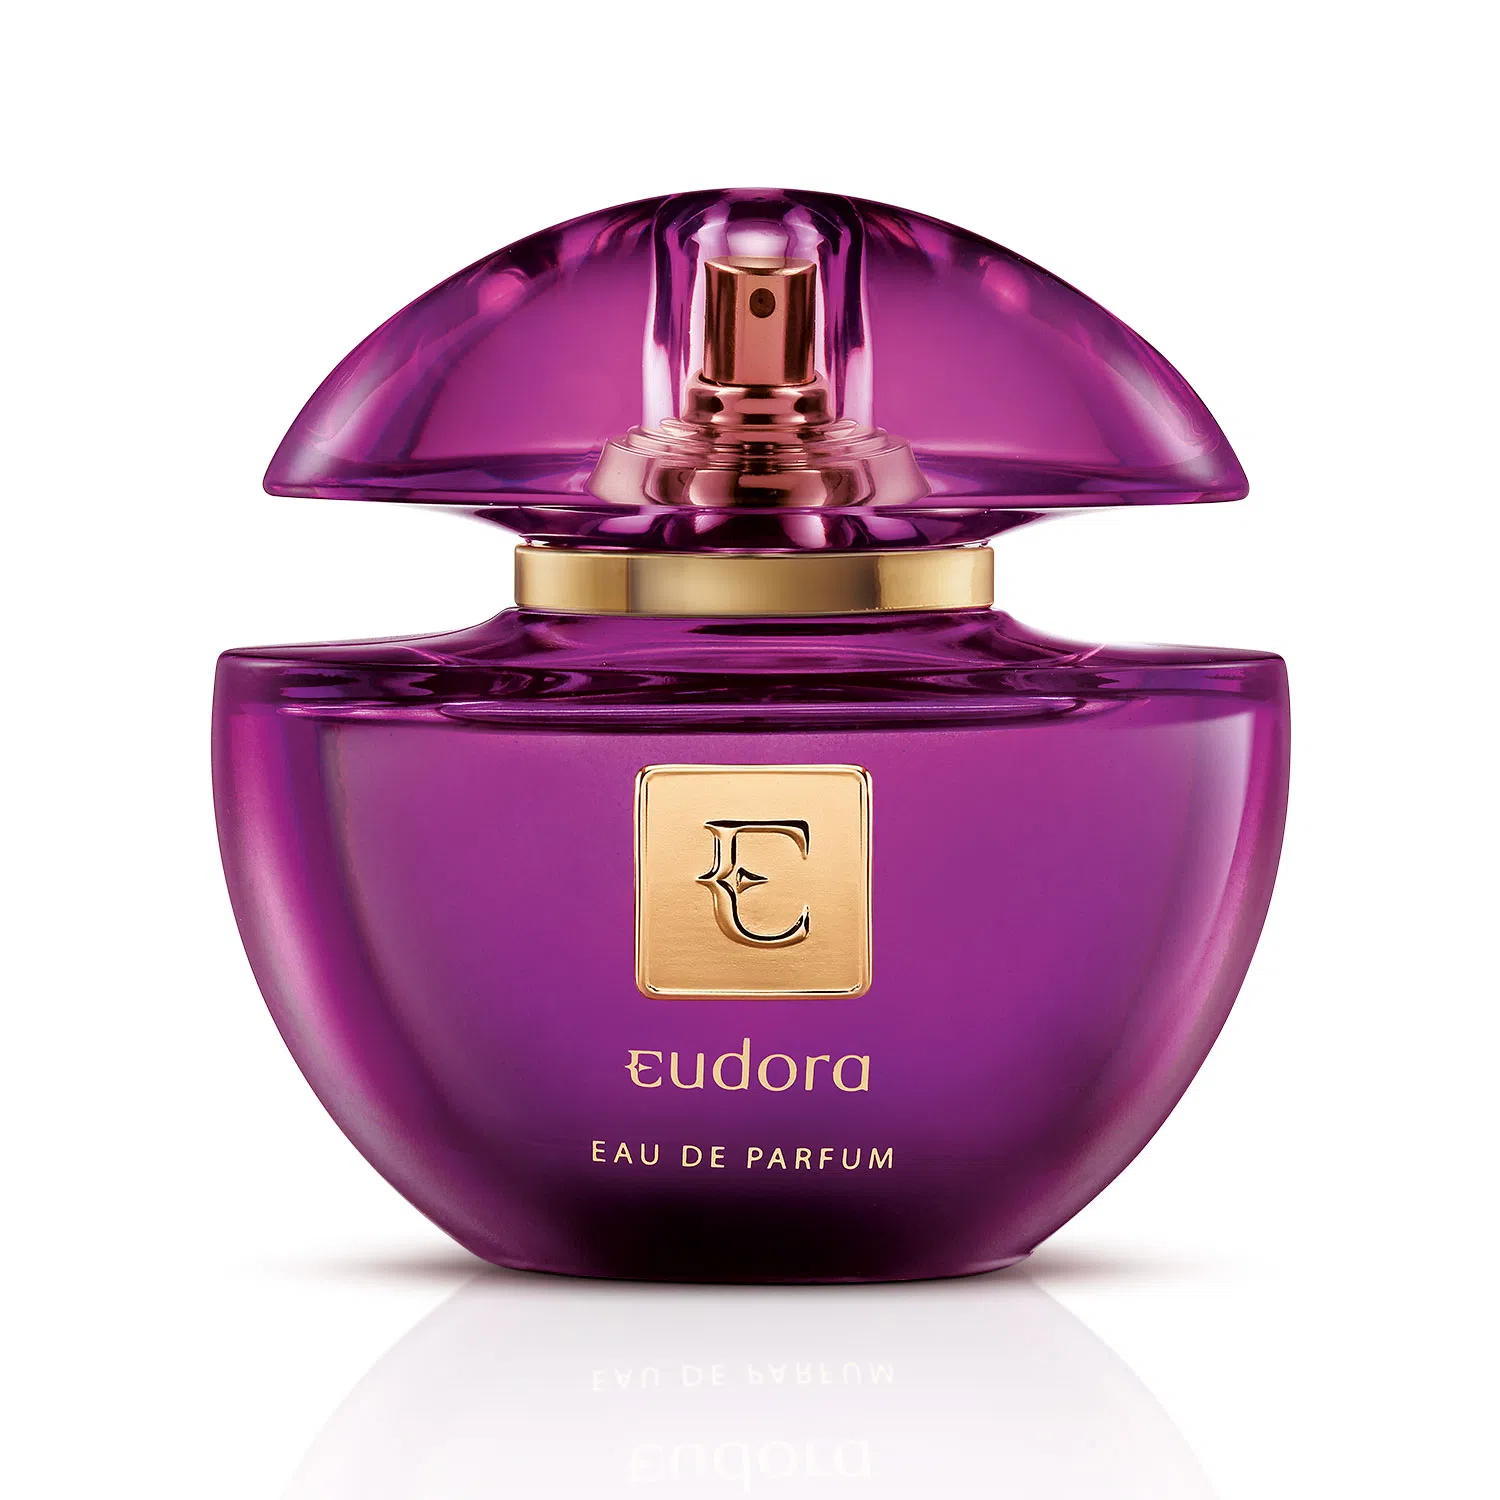 vidro de perfume para mulher arredondado na cor roxa eau de parfum eudora